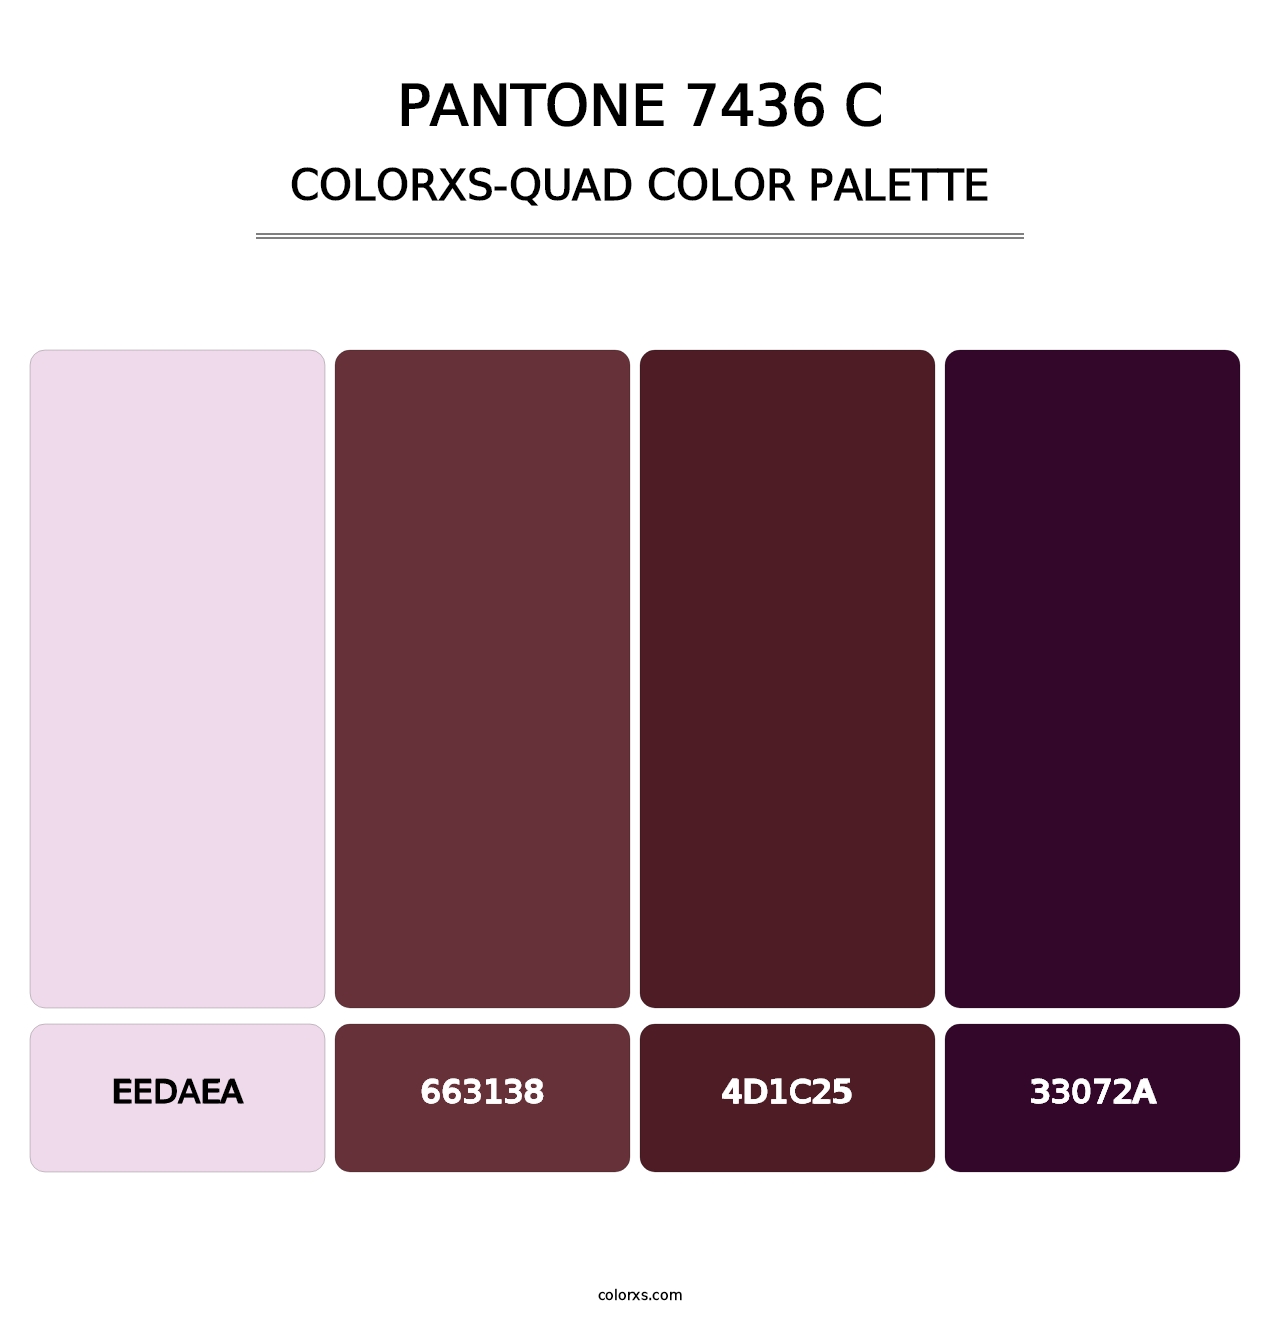 PANTONE 7436 C - Colorxs Quad Palette